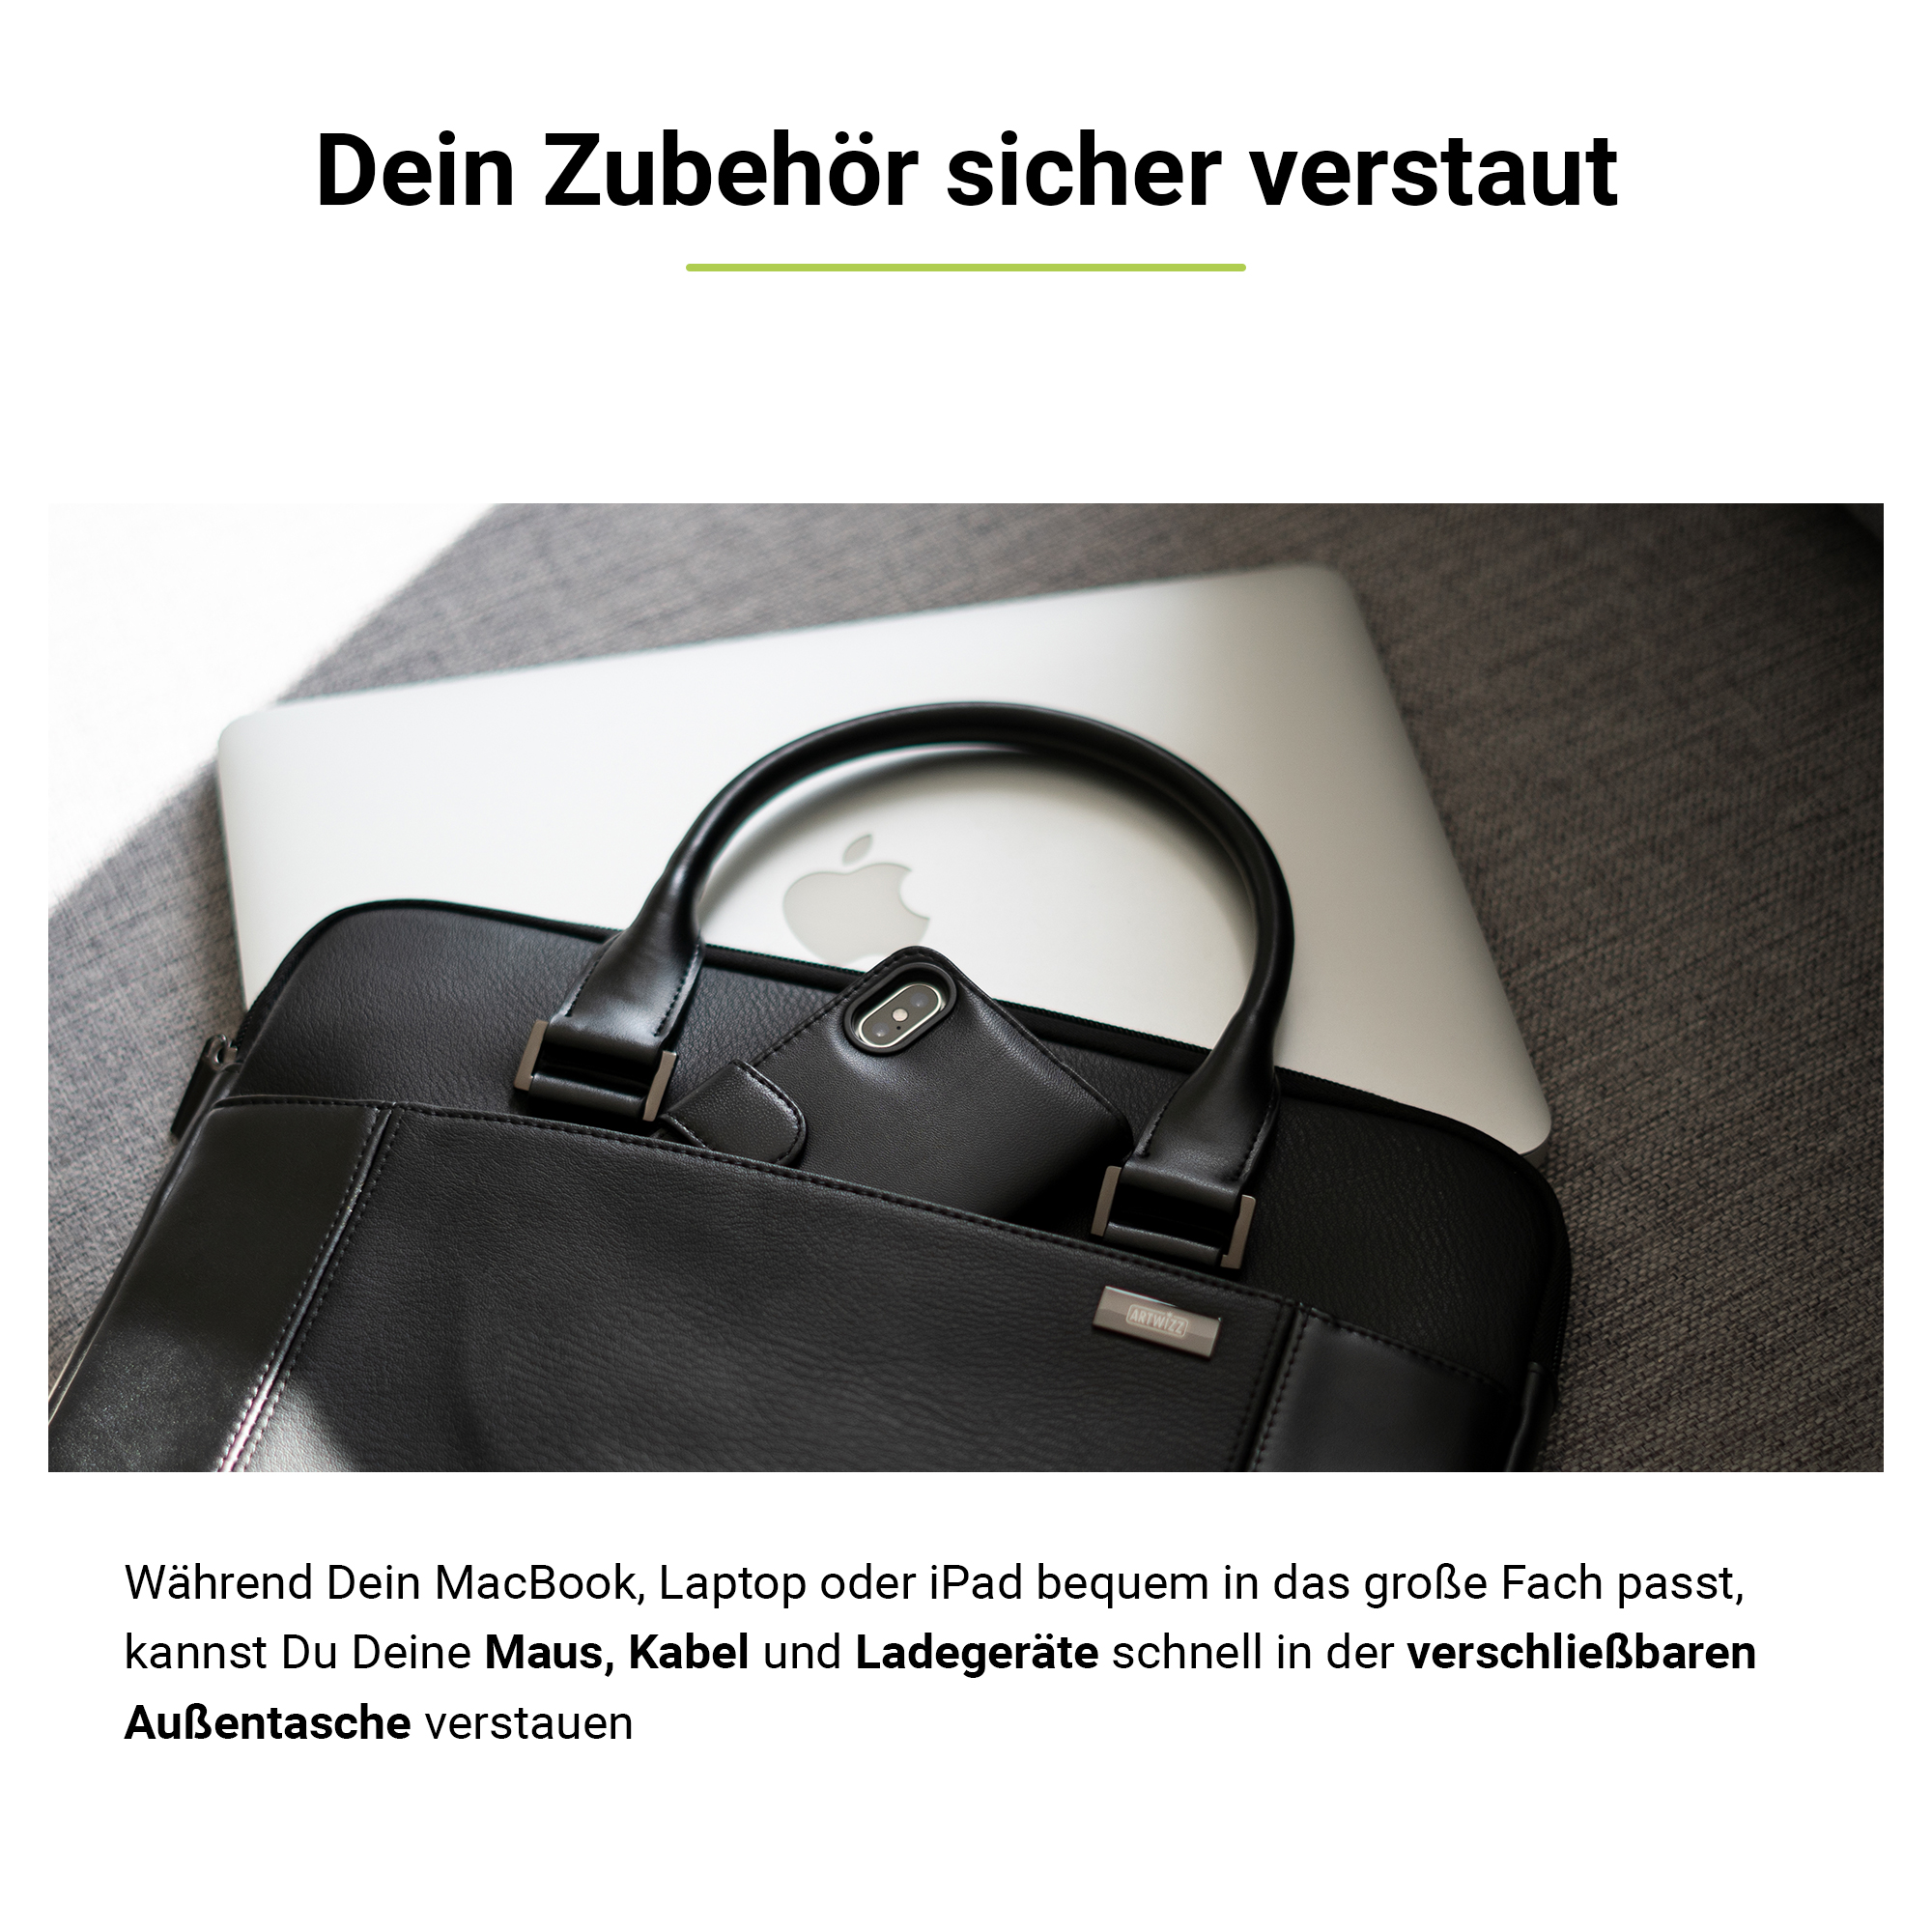 ARTWIZZ Leather Bag für 15 Schwarz 16 Tasche Aktentasche Leder, / Notebook Apple Zoll für